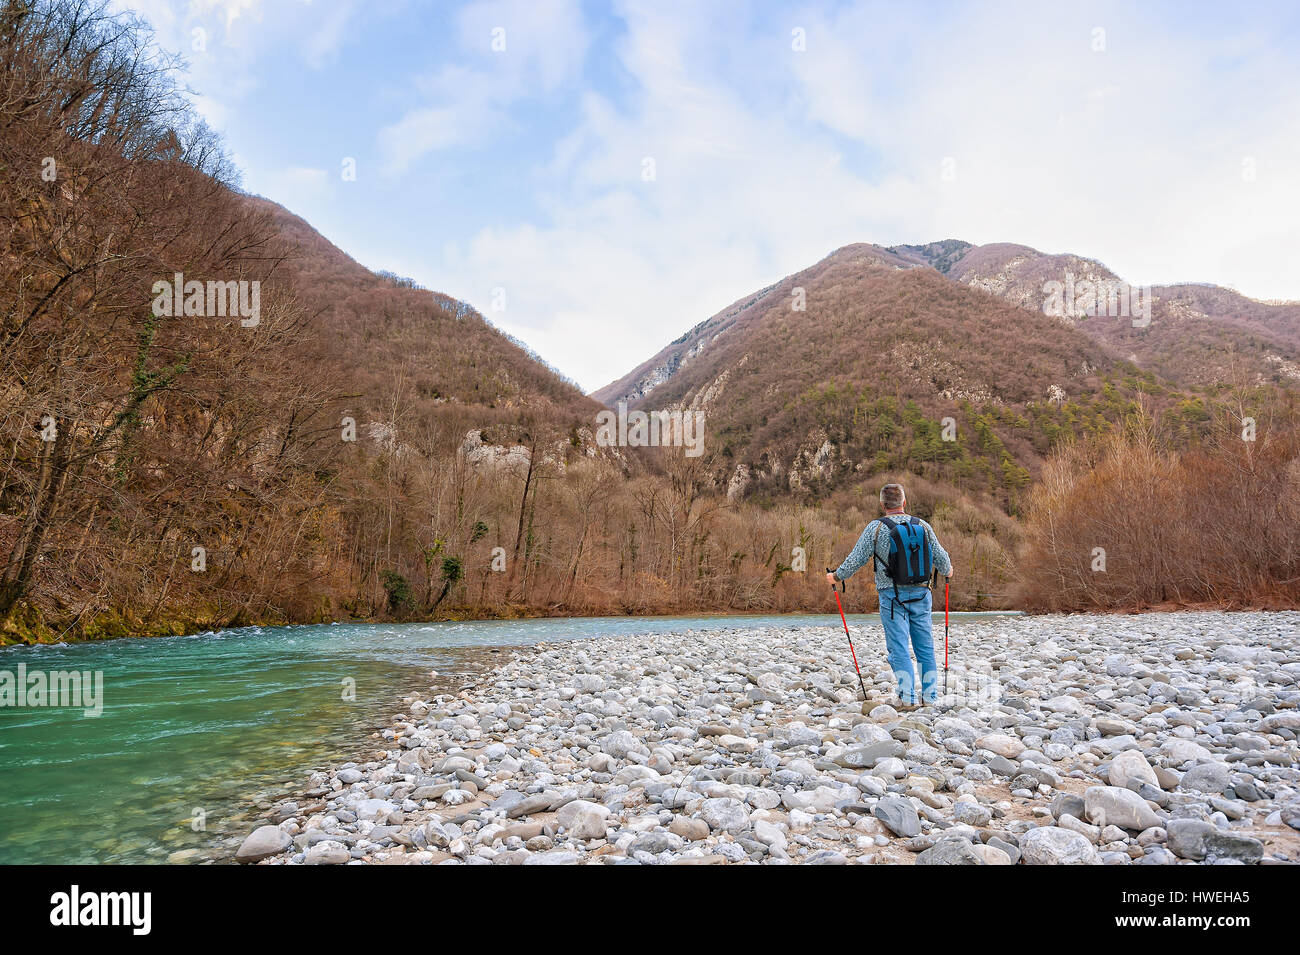 Caminante en la orilla de un río. Trekking hacia la montaña. Rambler de alrededor de 60 años de edad. Foto de stock